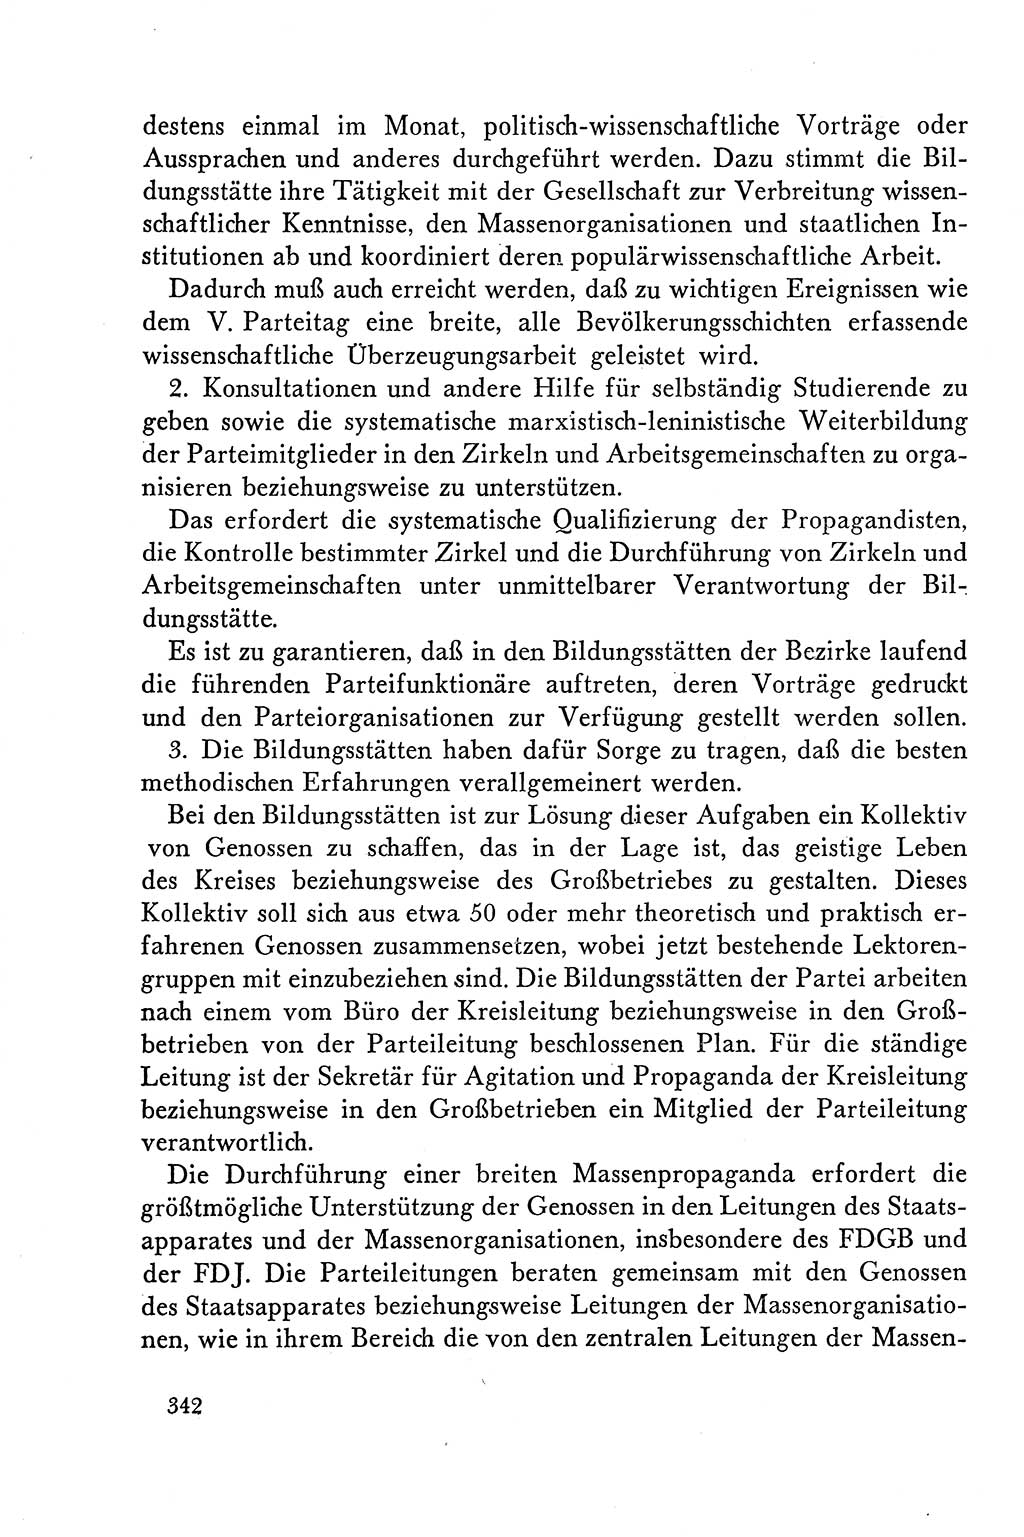 Dokumente der Sozialistischen Einheitspartei Deutschlands (SED) [Deutsche Demokratische Republik (DDR)] 1958-1959, Seite 342 (Dok. SED DDR 1958-1959, S. 342)